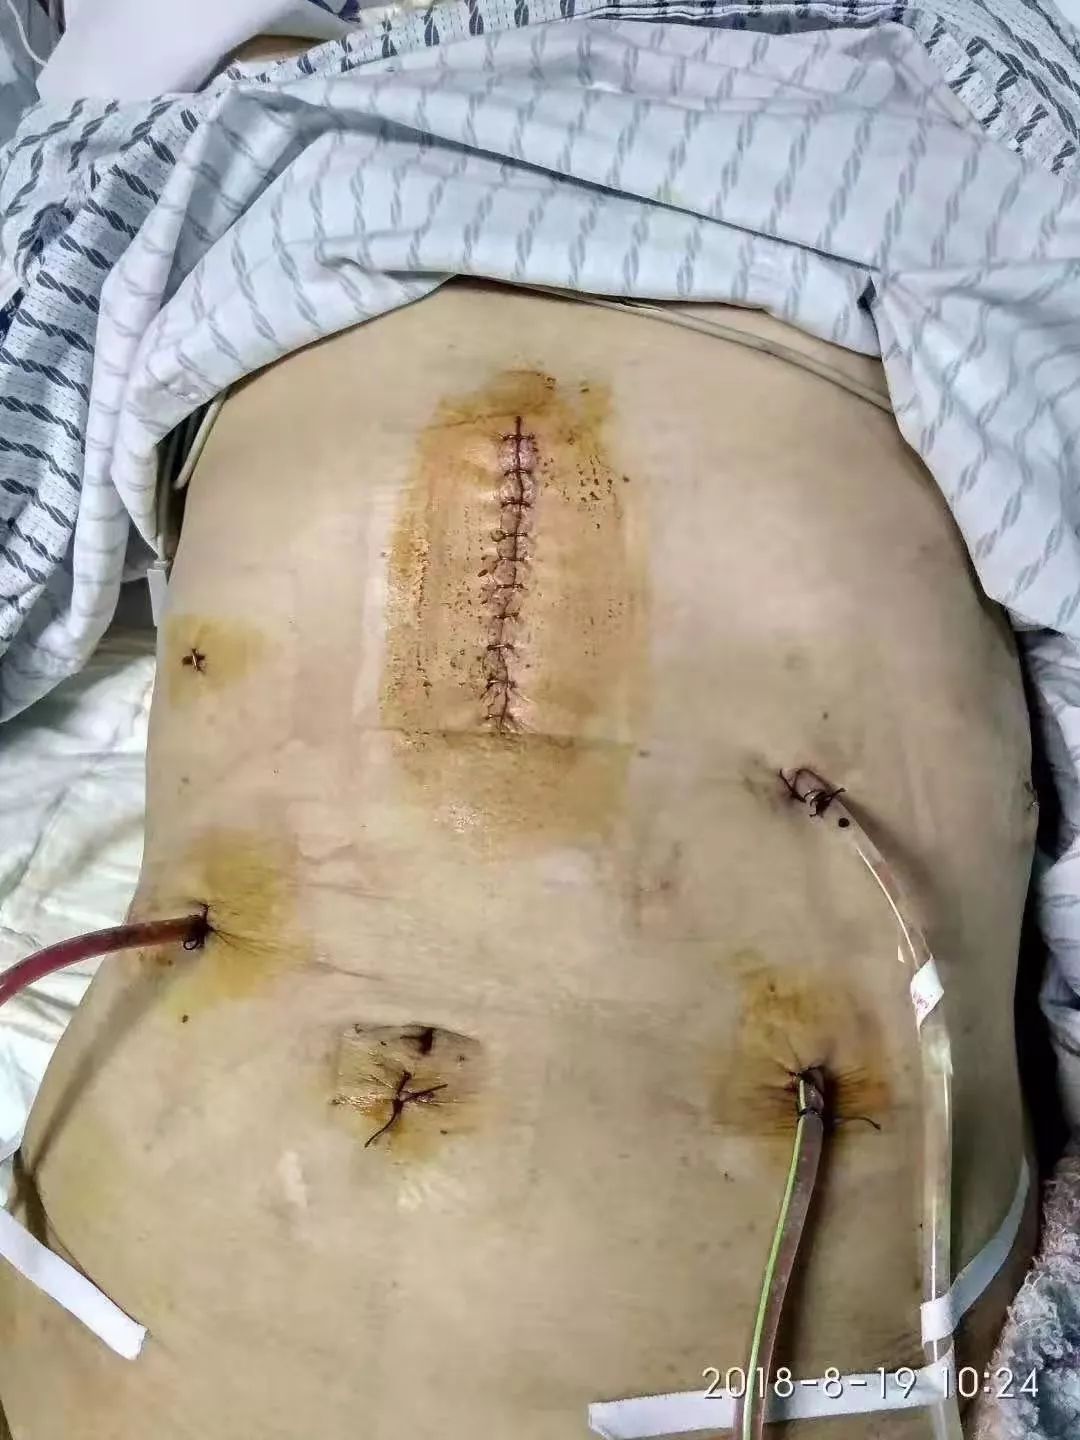 胃癌手术刀疤图片图片